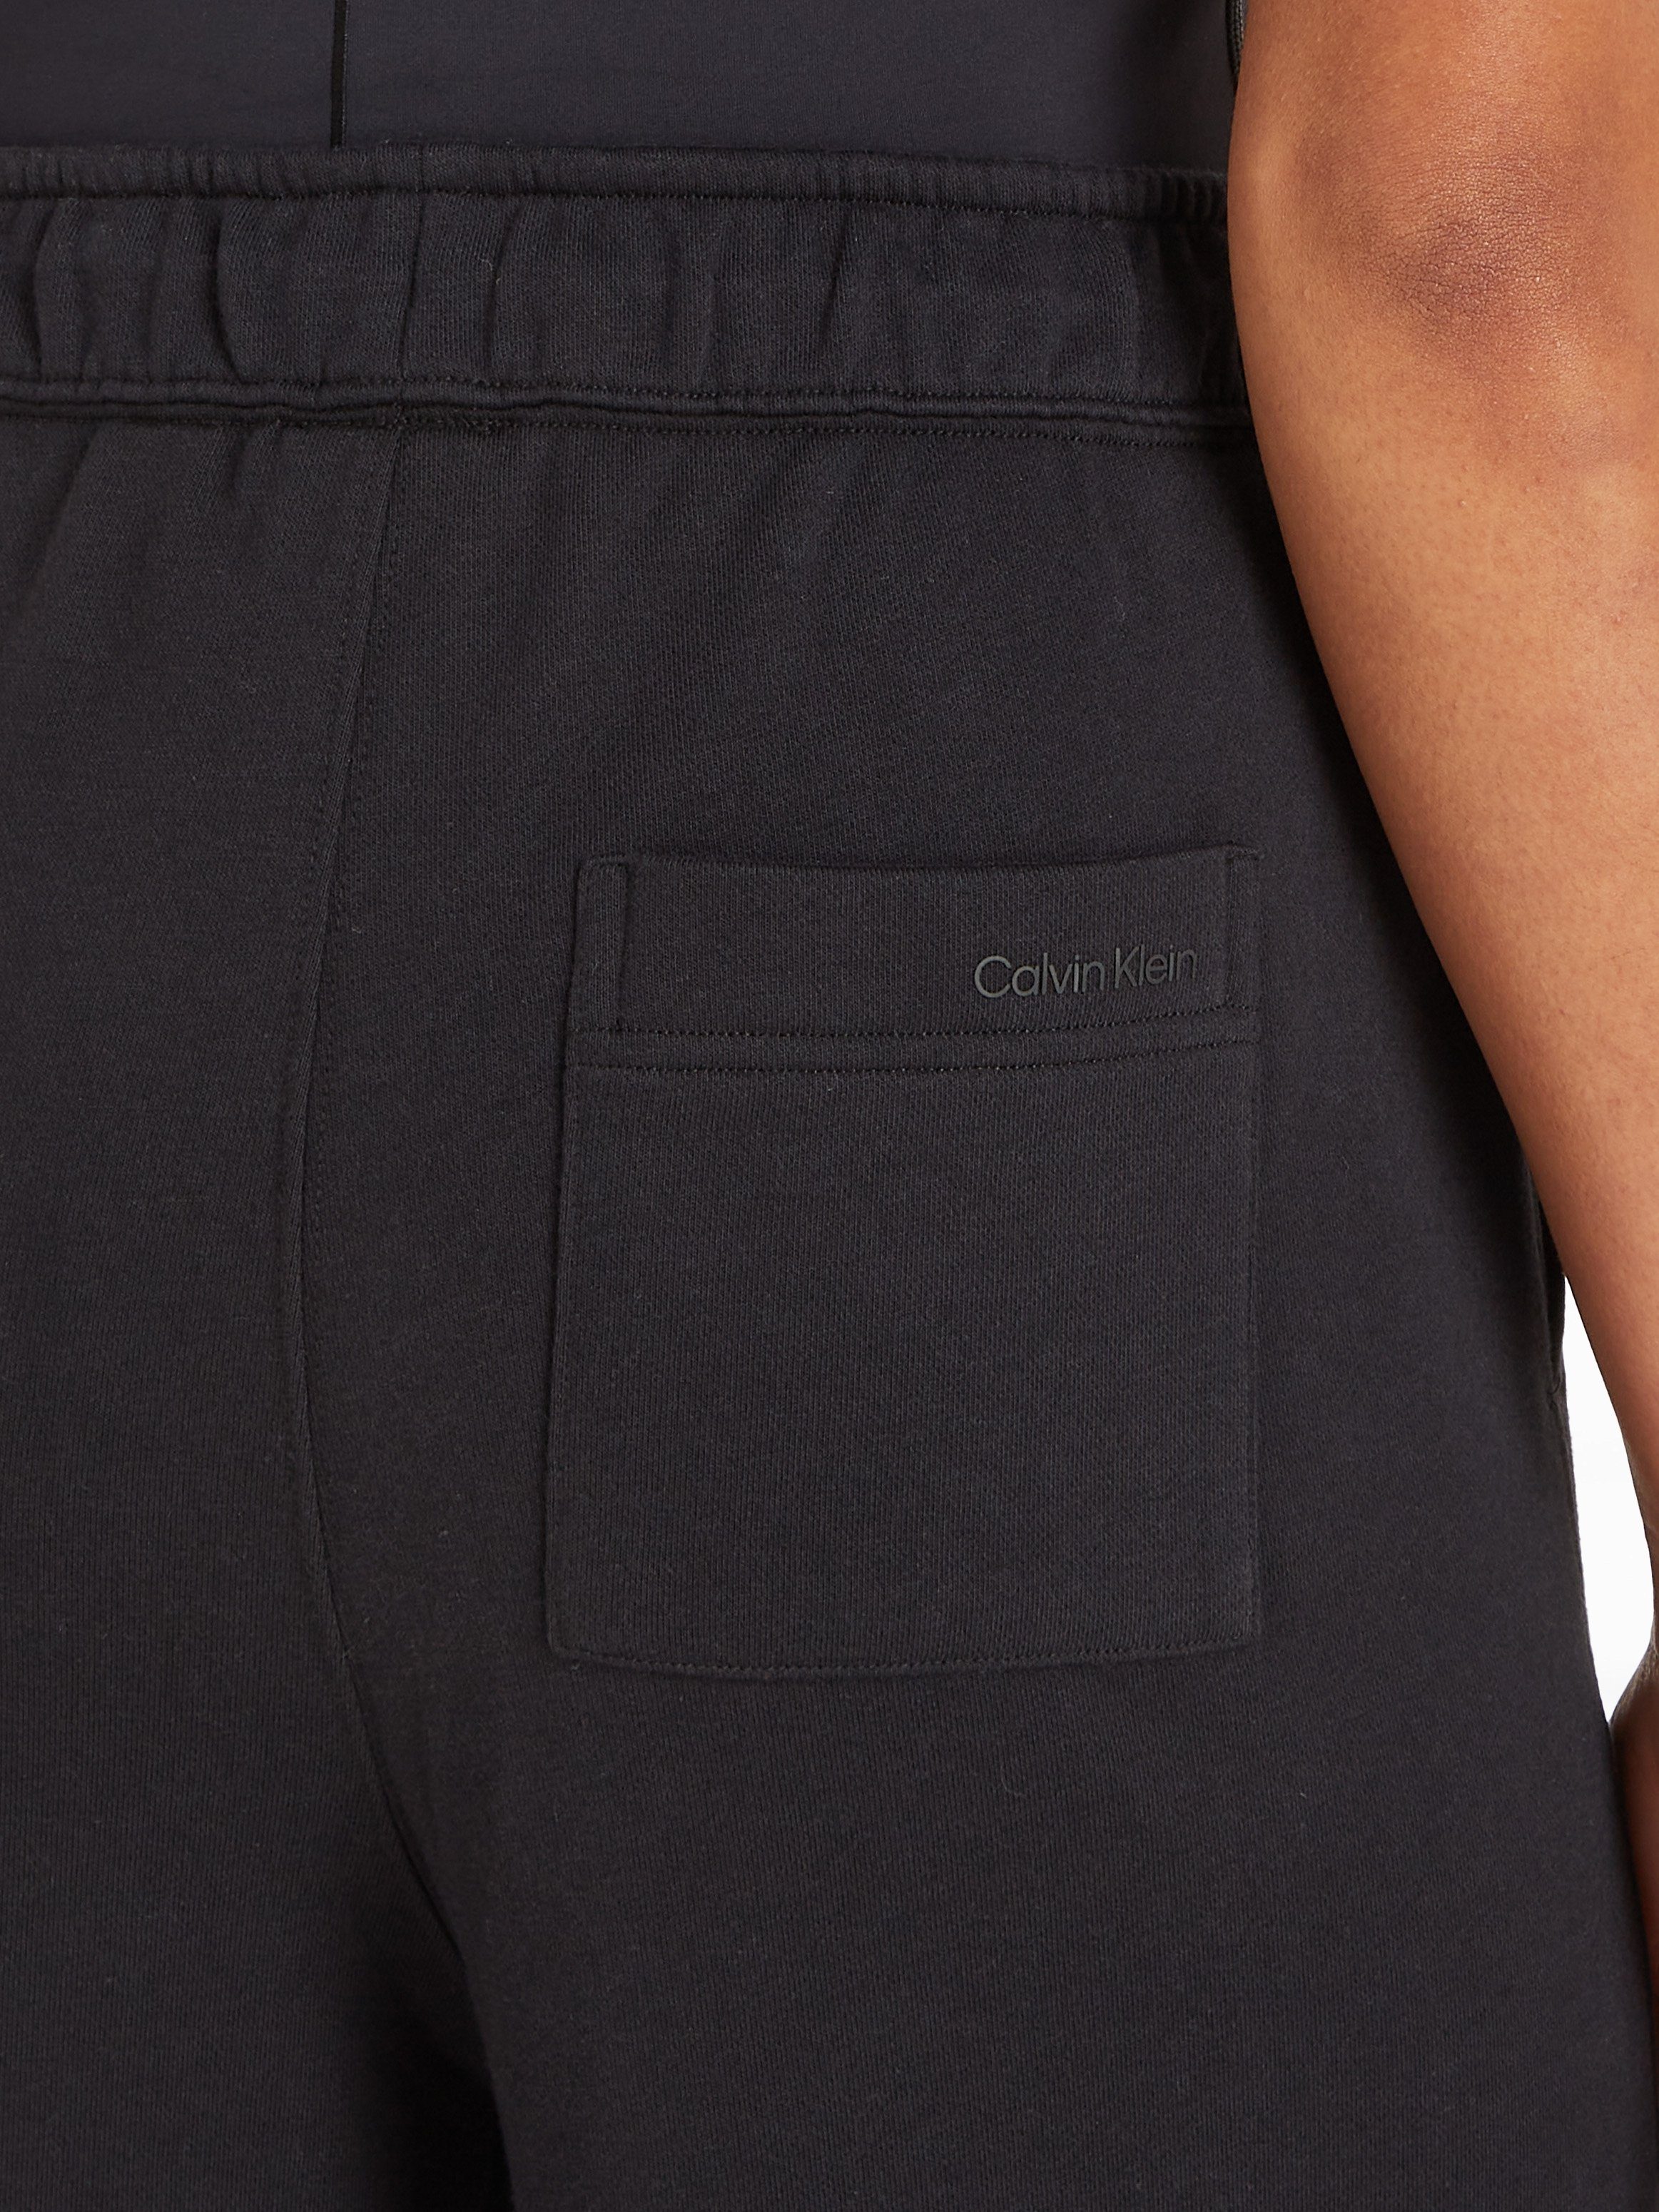 Calvin Klein Sport Jogginghose schwarz PW Pant Wide - Leg